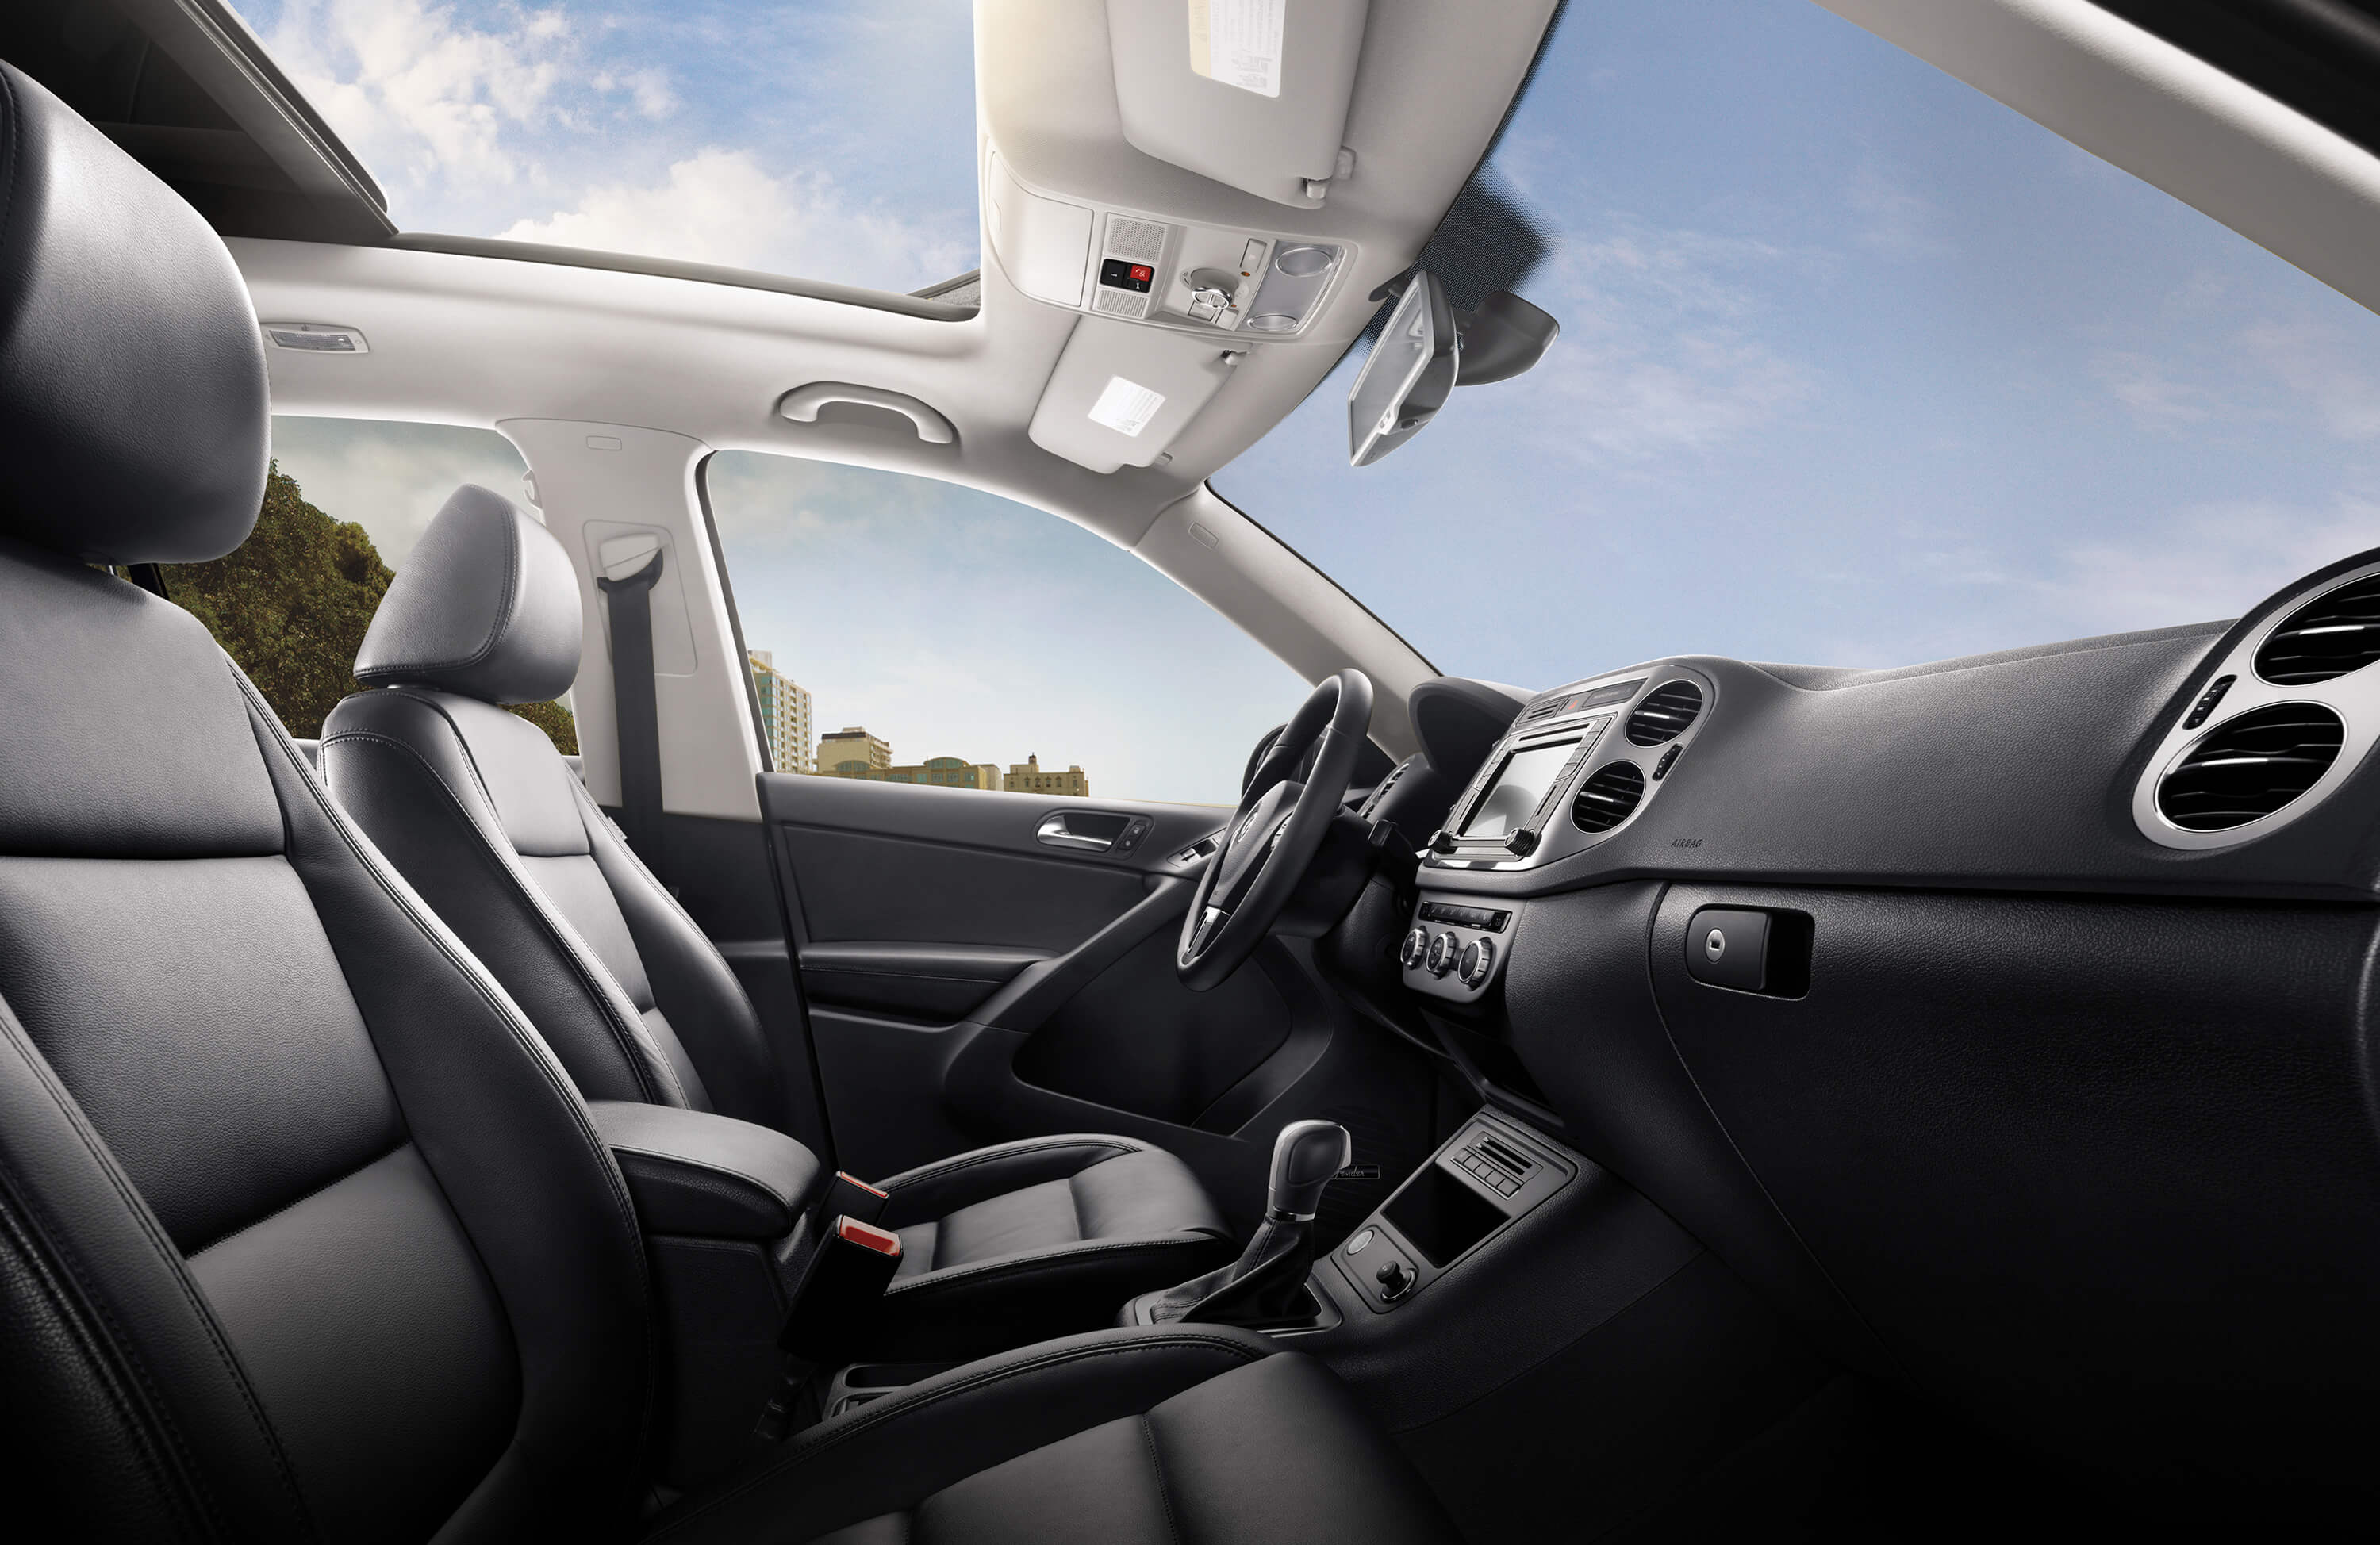 Volkswagen Tiguan S interior front seat view